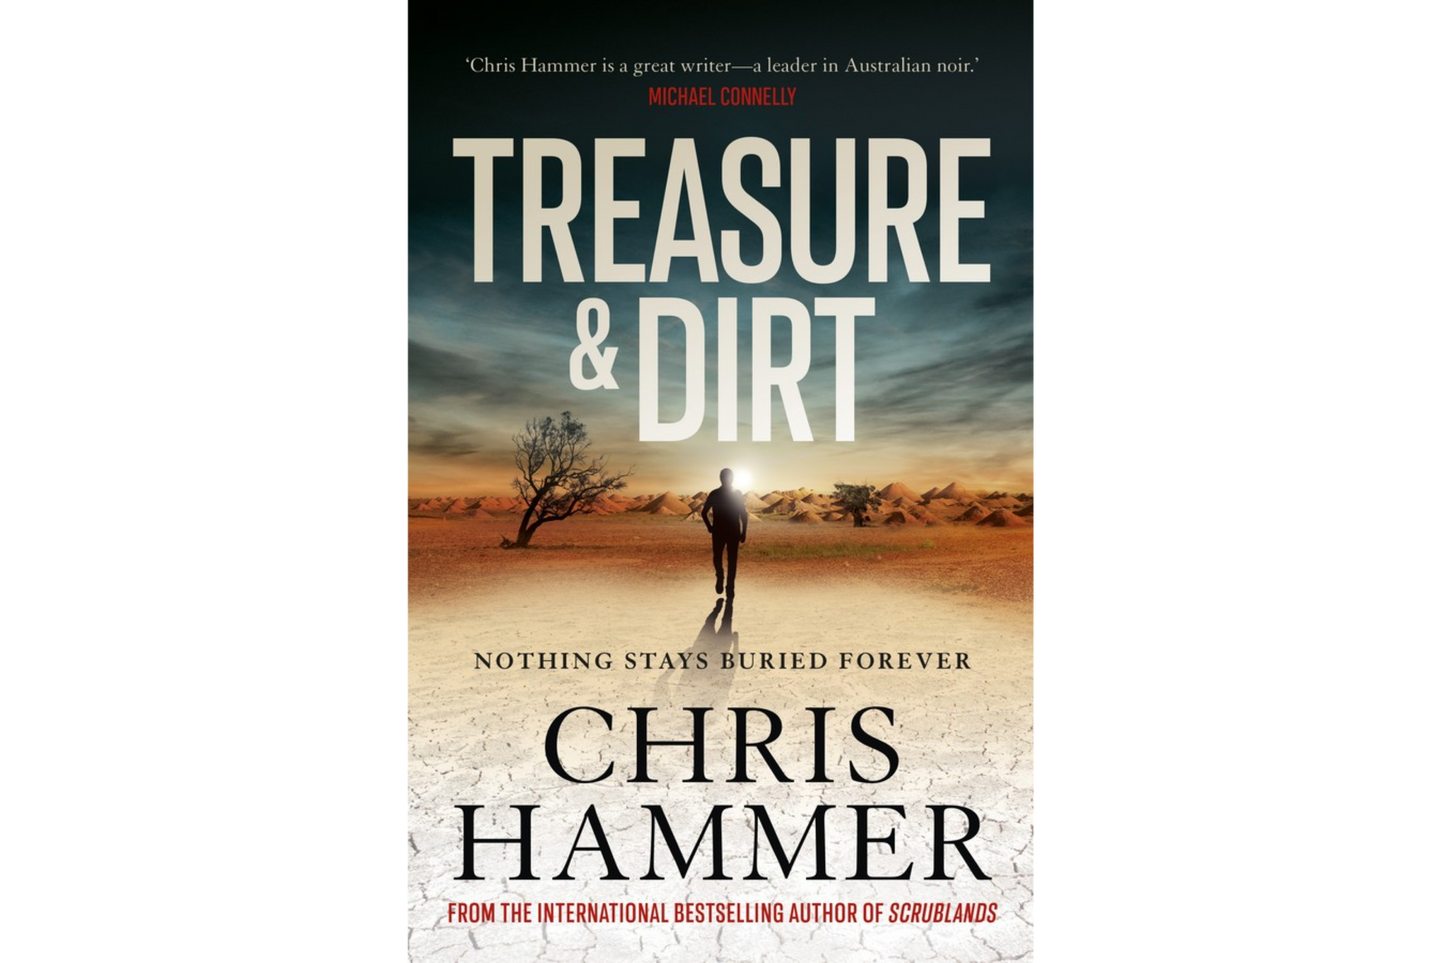 Treasure and Dirt (Chris Hammer)